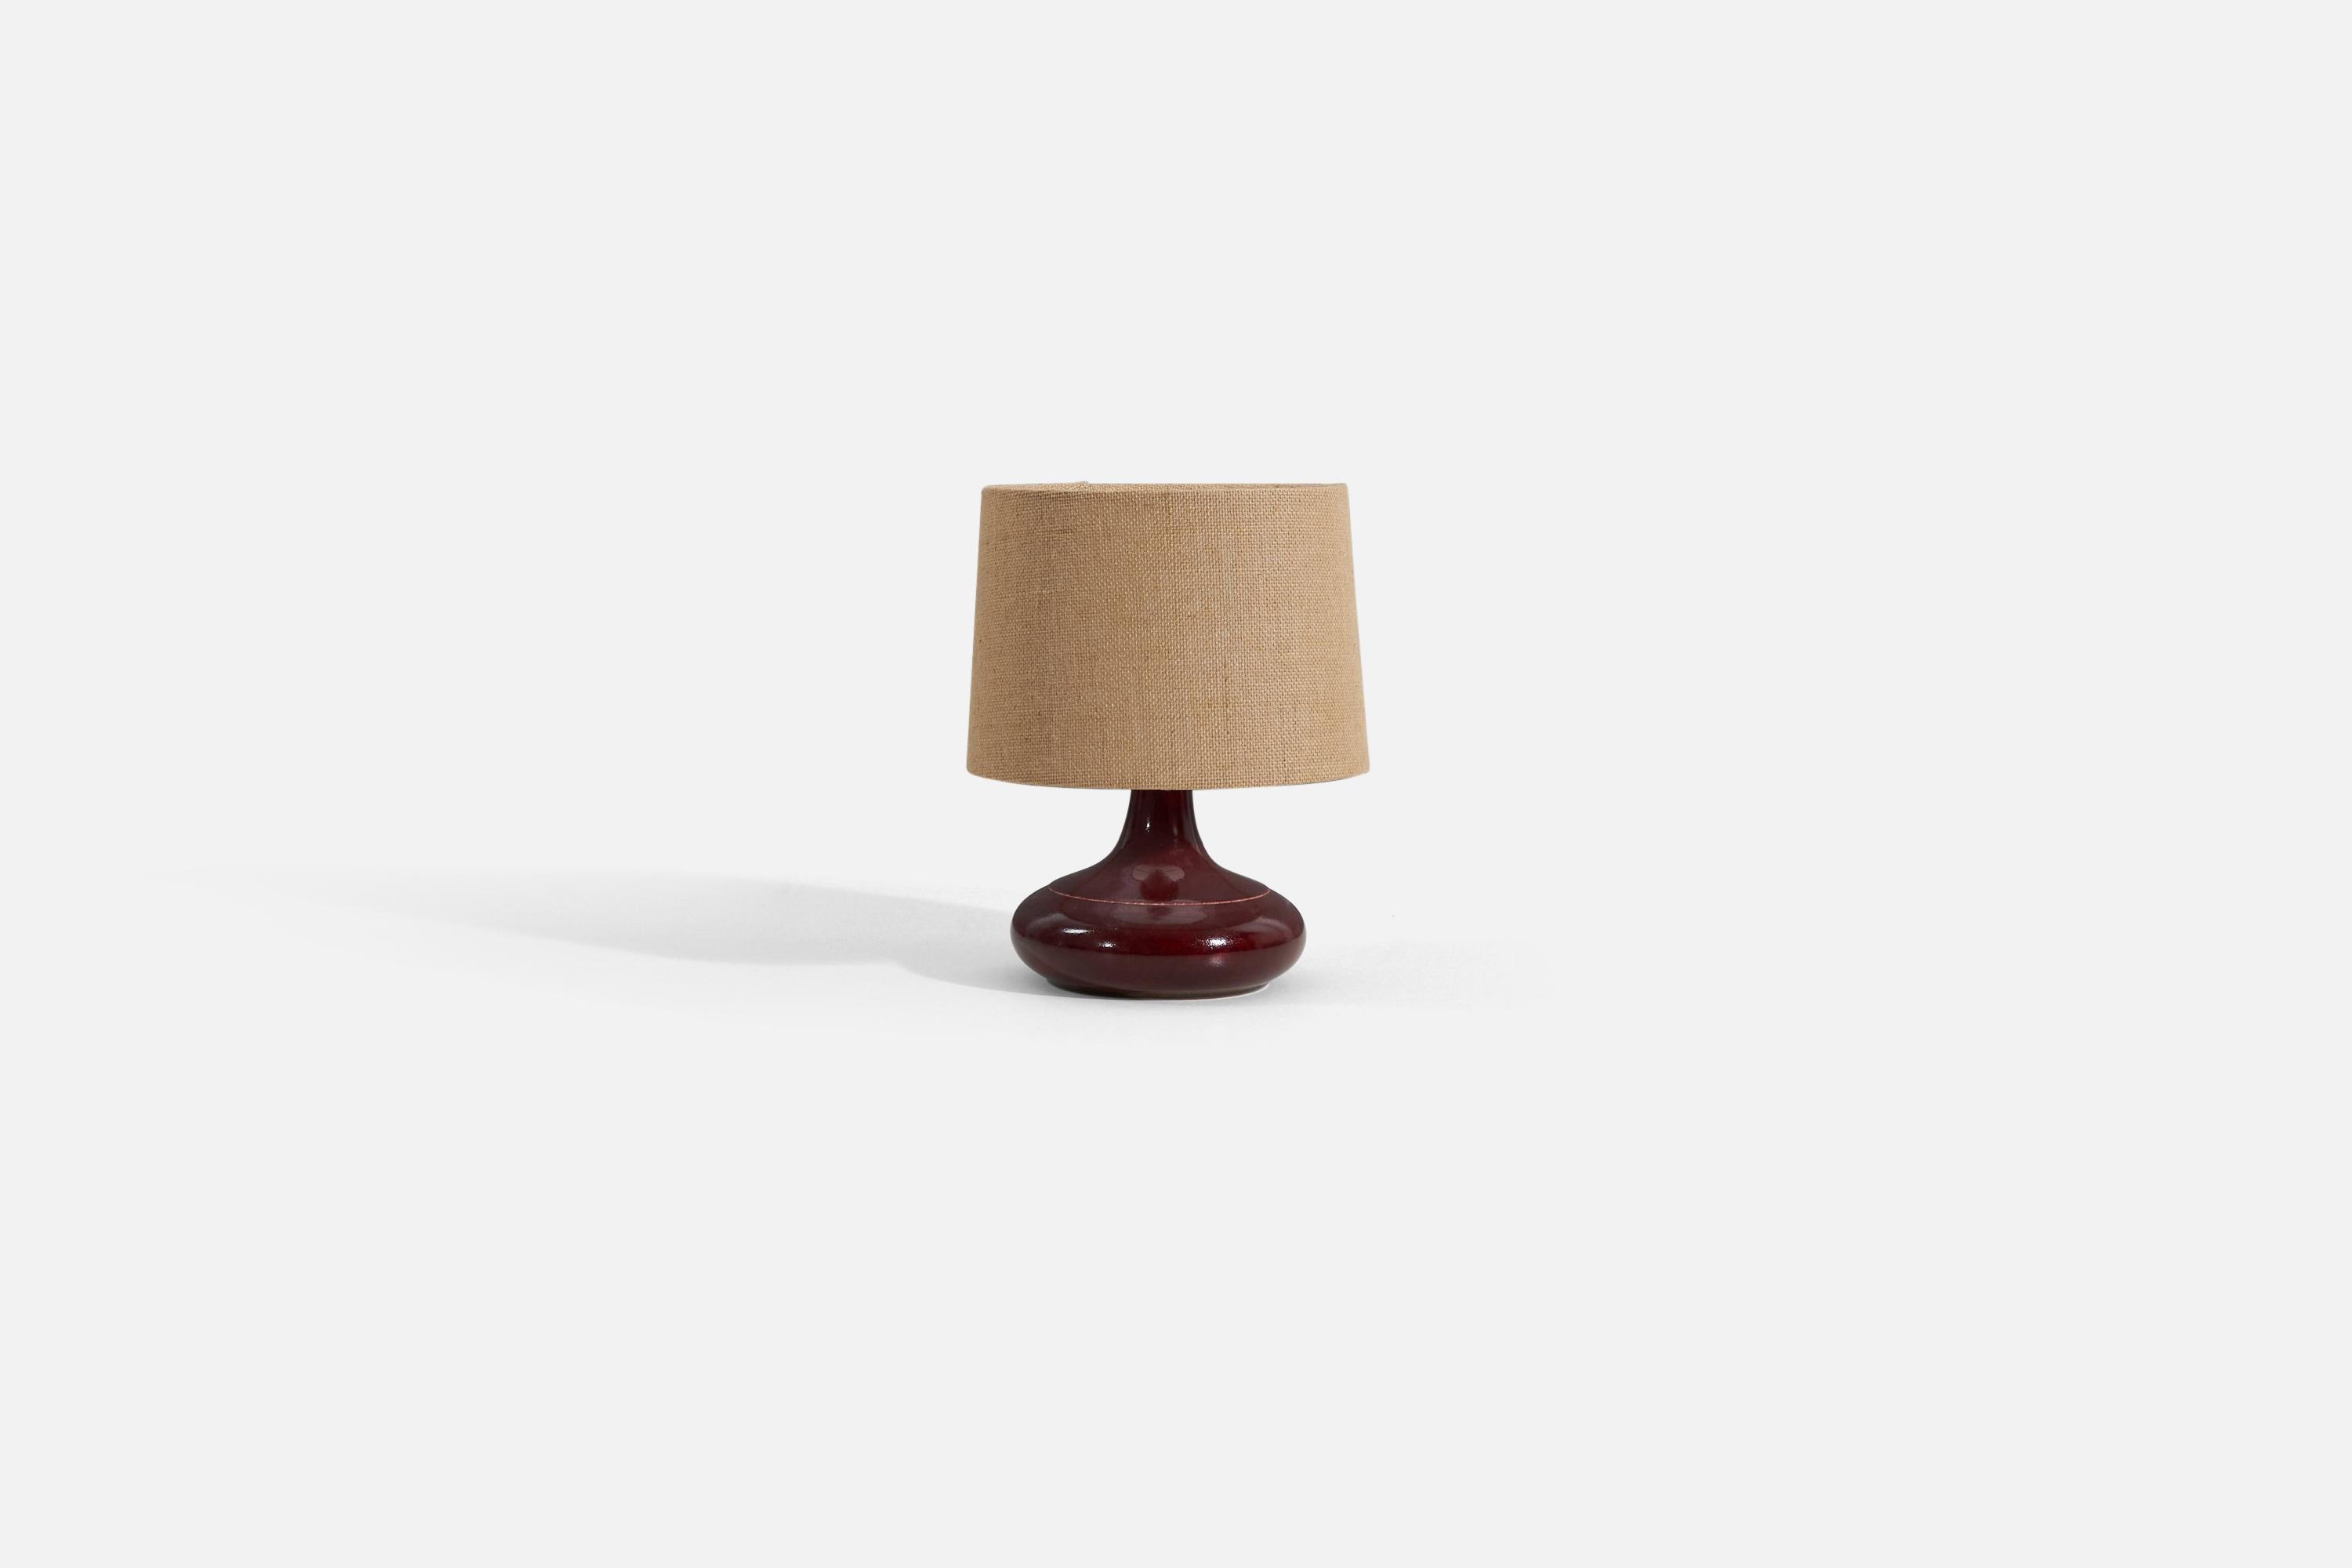 Une lampe de table rouge / bourgogne, conçue et produite par Desiree Stentøj, Danemark, années 1960. Estampillée sur la face inférieure.

Vendu sans abat-jour. Les dimensions indiquées ne comprennent pas l'abat-jour. La hauteur inclut la douille.